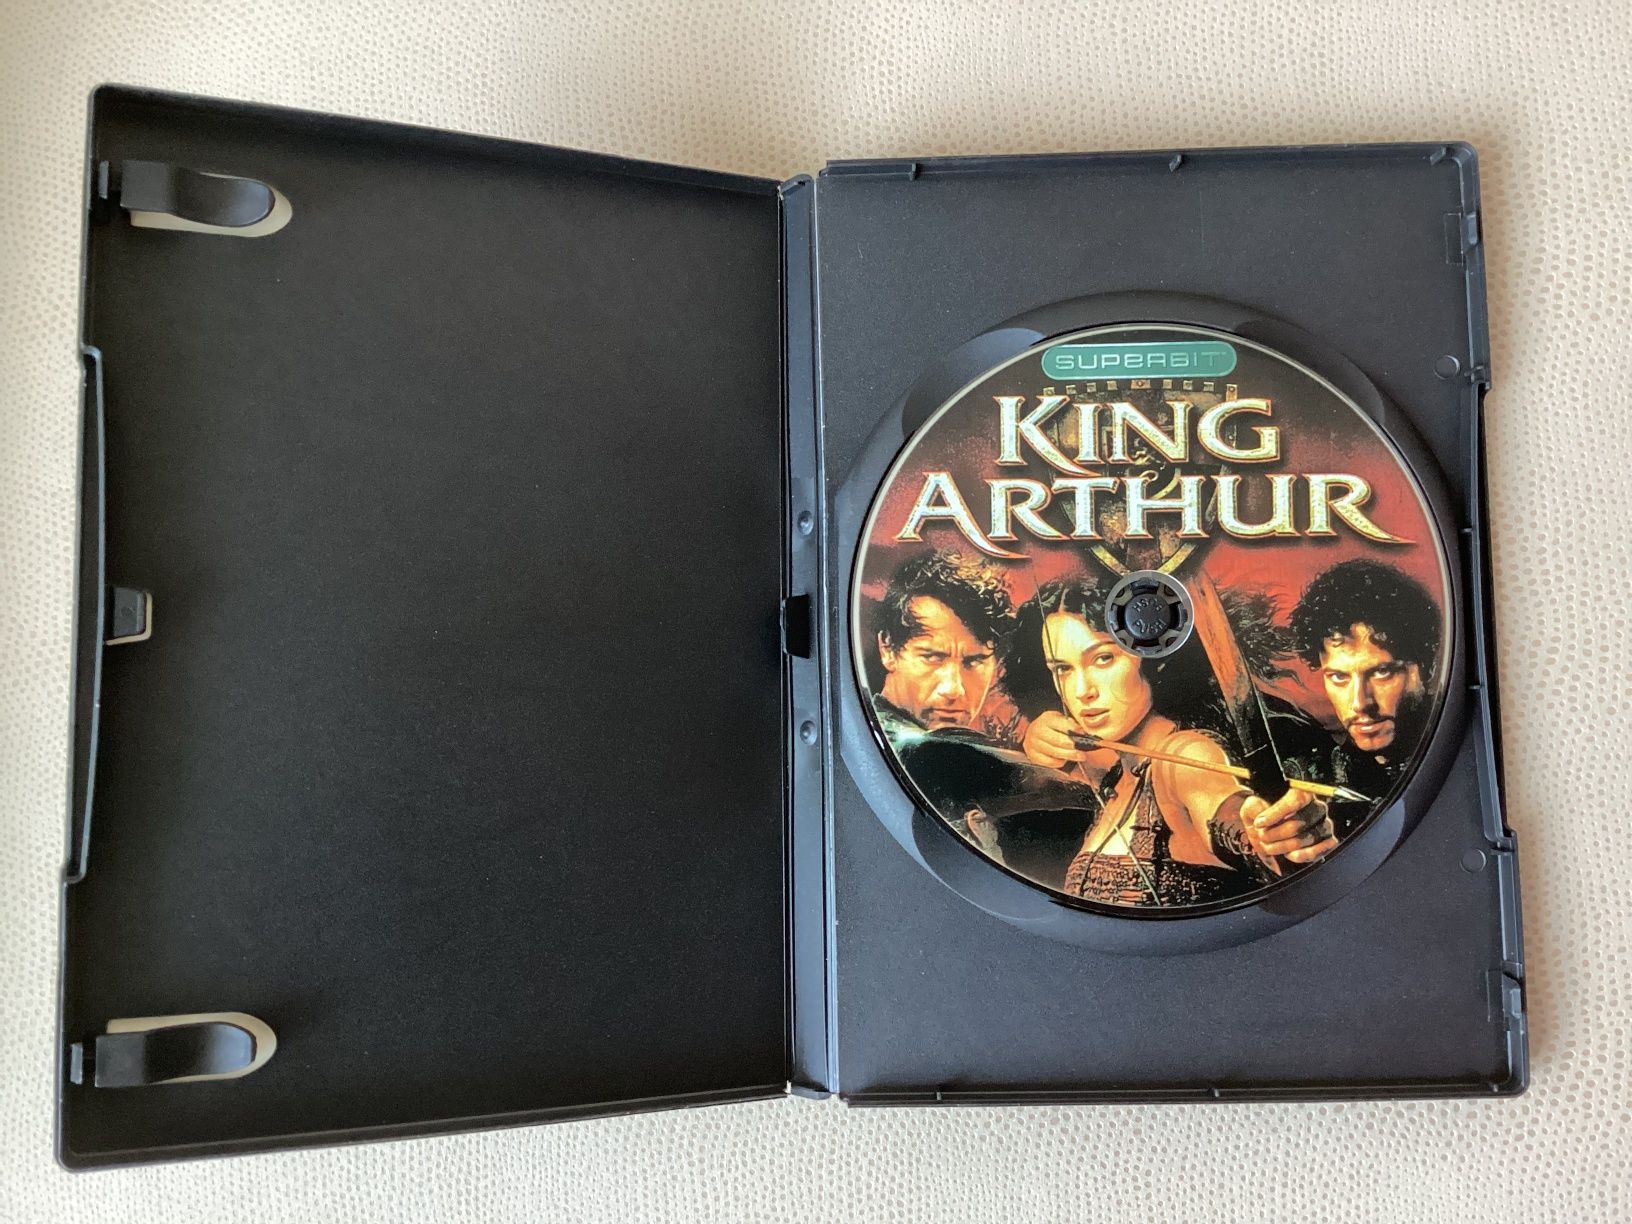 DVD диск SUPERBIT / EXTRABIT dts Король Артур. В отличном состоянии.